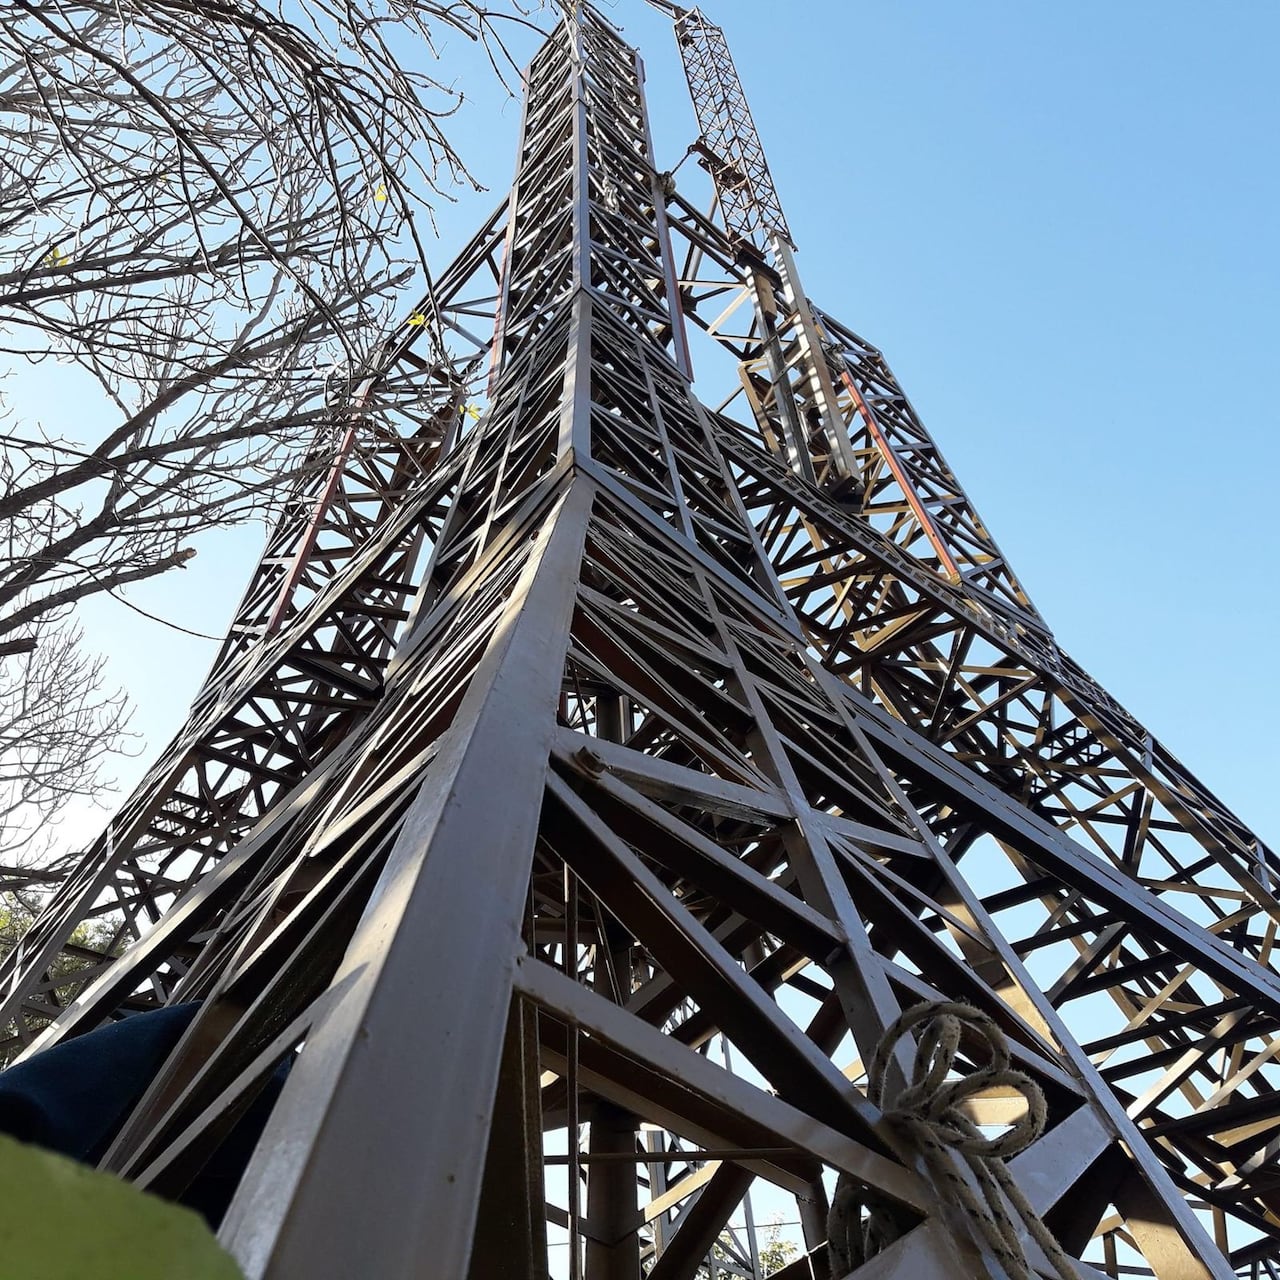 La torre tendrá una altura de 30 metros